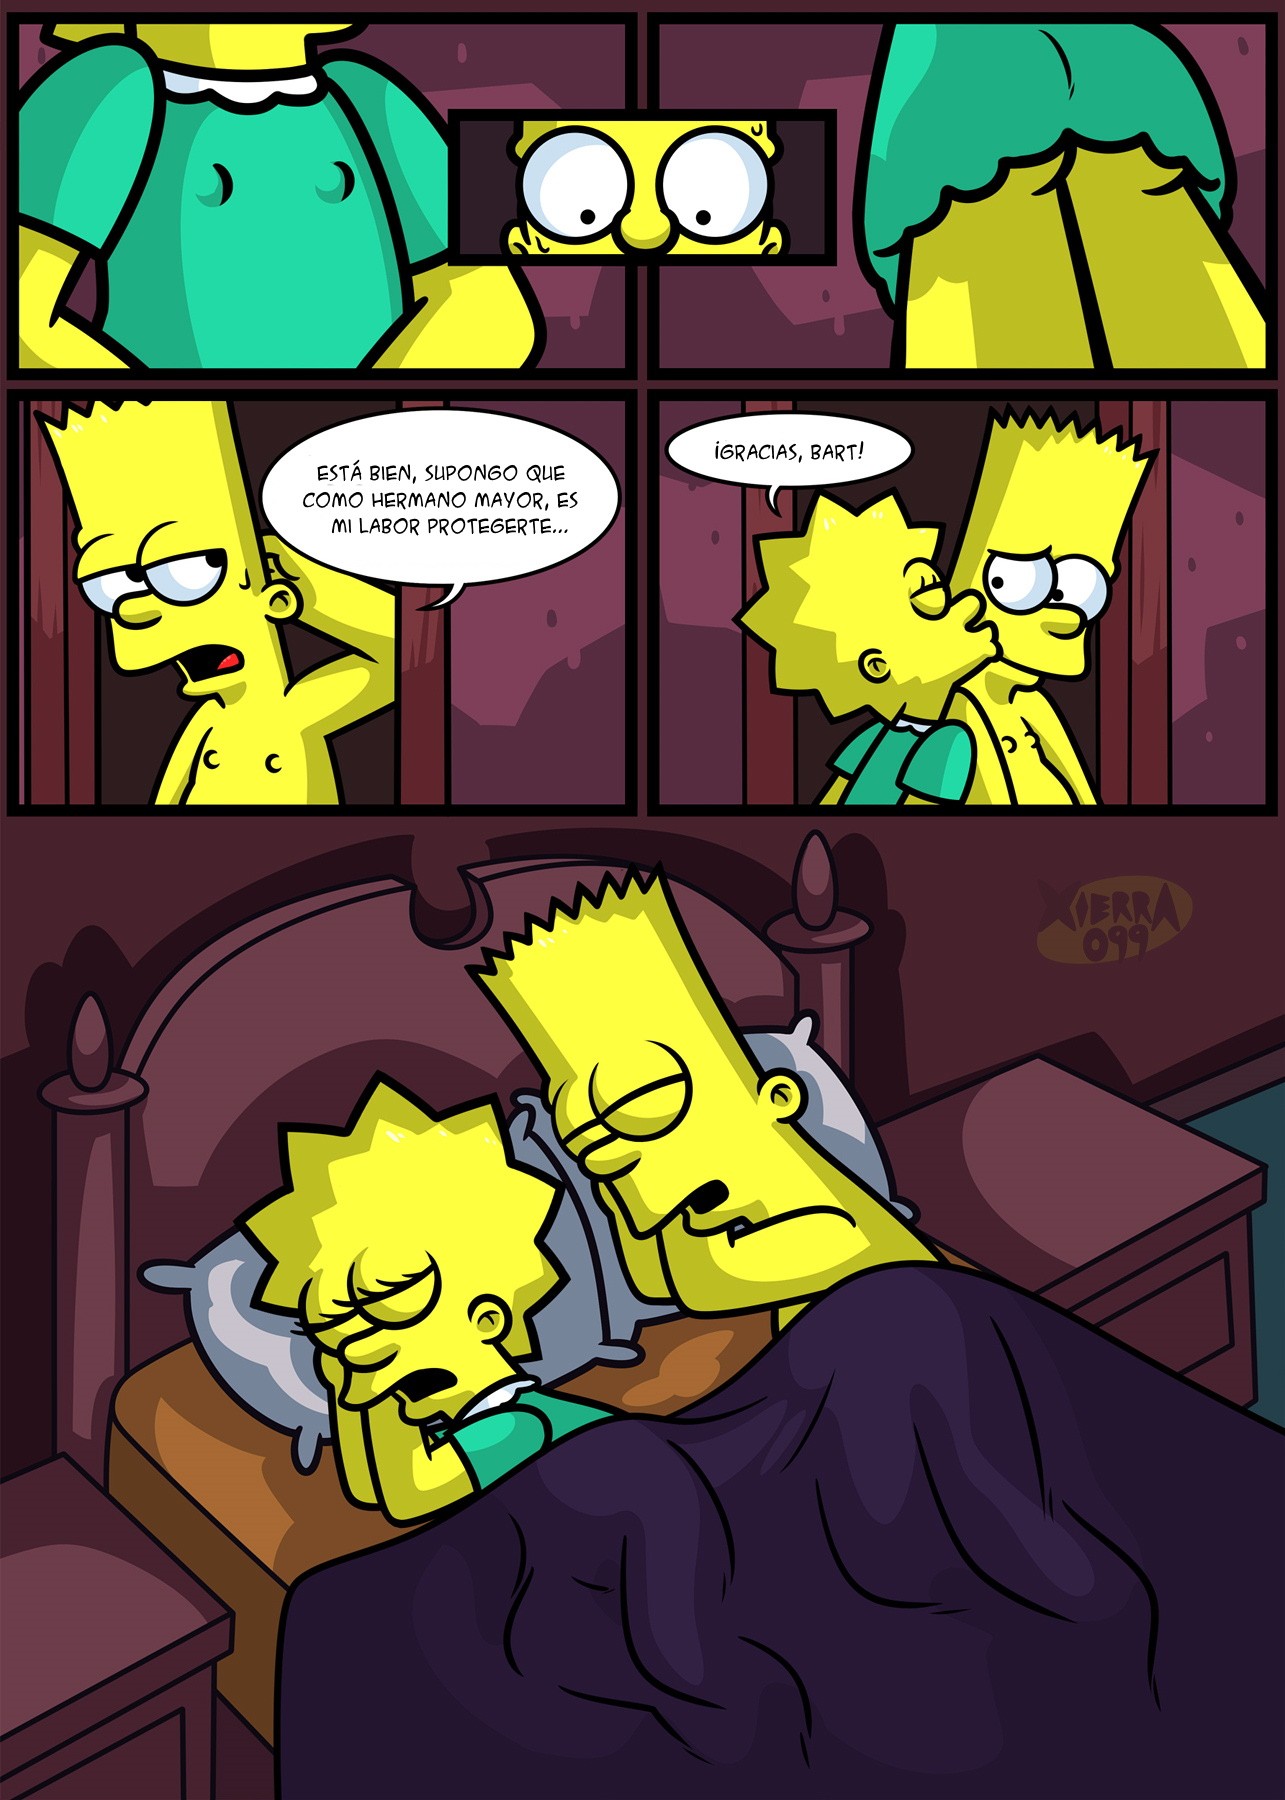 Los Simpsons Porno: Sexo Incesto entre Bart y Lisa - Vercomicsporno